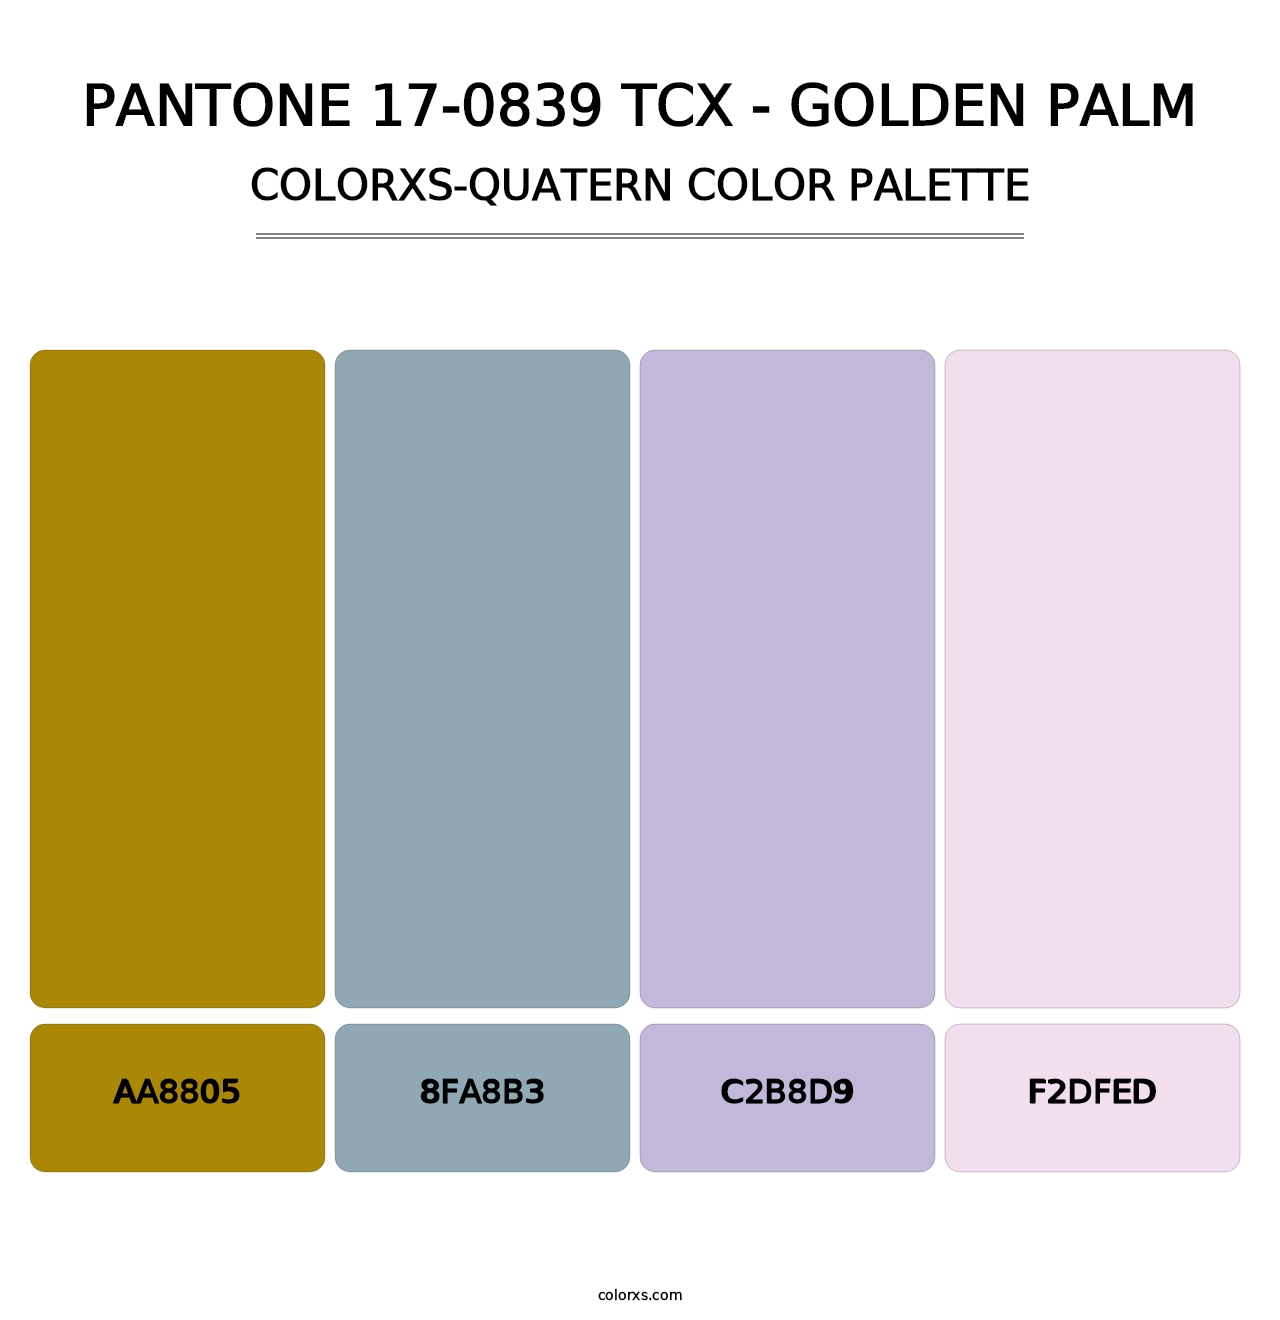 PANTONE 17-0839 TCX - Golden Palm - Colorxs Quatern Palette